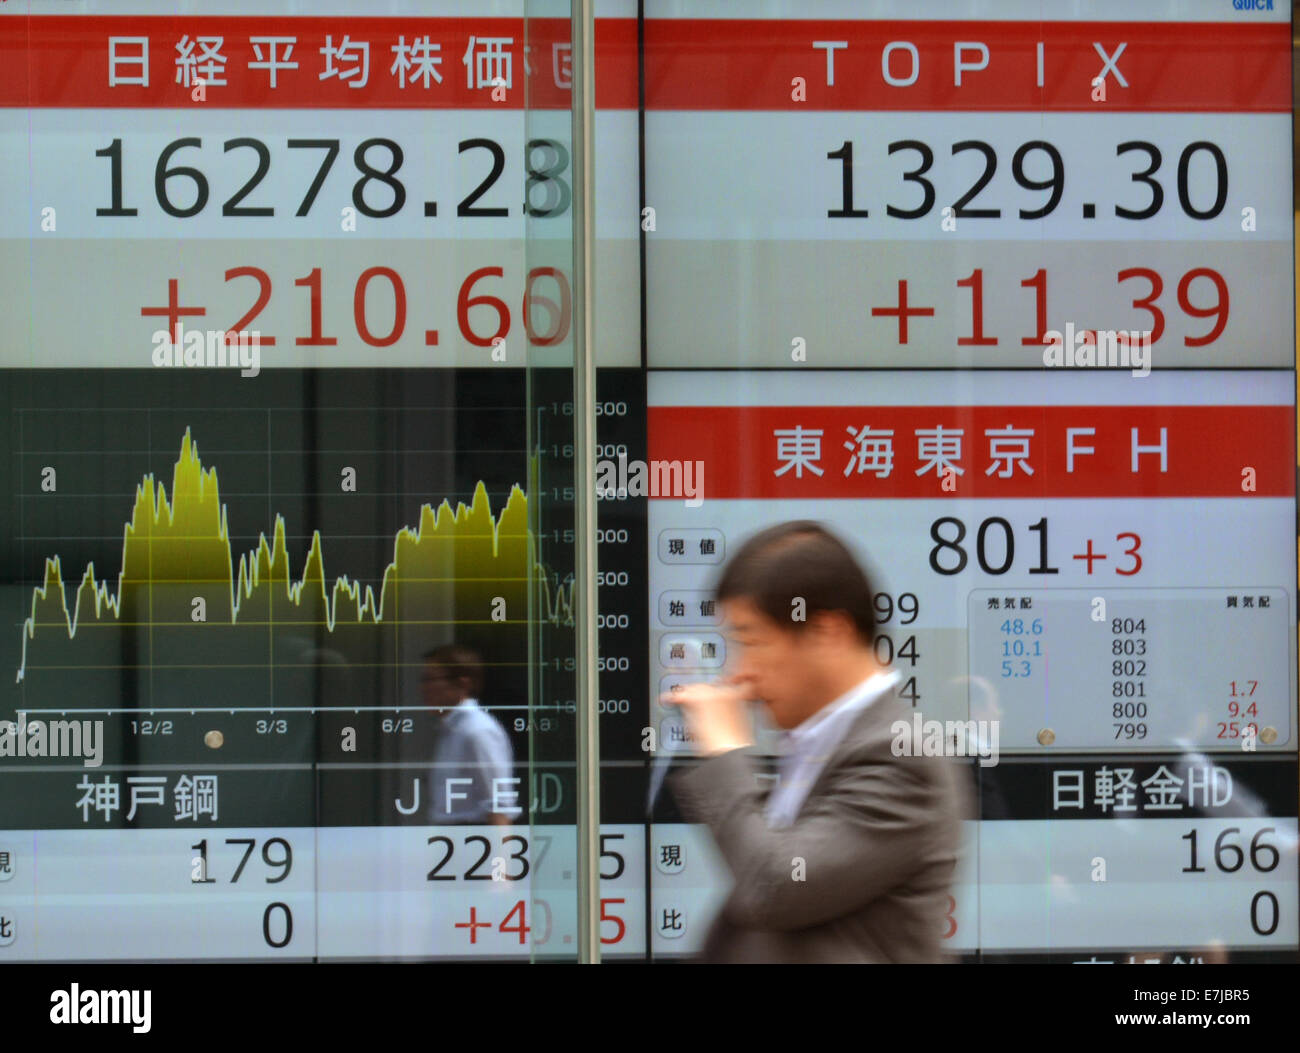 Tokio, Japón. 19 Sep, 2014. El 225-tema Nikkei Stock promedio sube 210.60 puntos a 16,278.28, casi nueve meses en la Bolsa de Valores de Tokio el viernes, 19 de septiembre de 2014. El más amplio índice TOPIX de la primera sección cuestiones fue hasta 11,39 en 1329.30. Crédito: Natsuki Sakai/AFLO/Alamy Live News Foto de stock